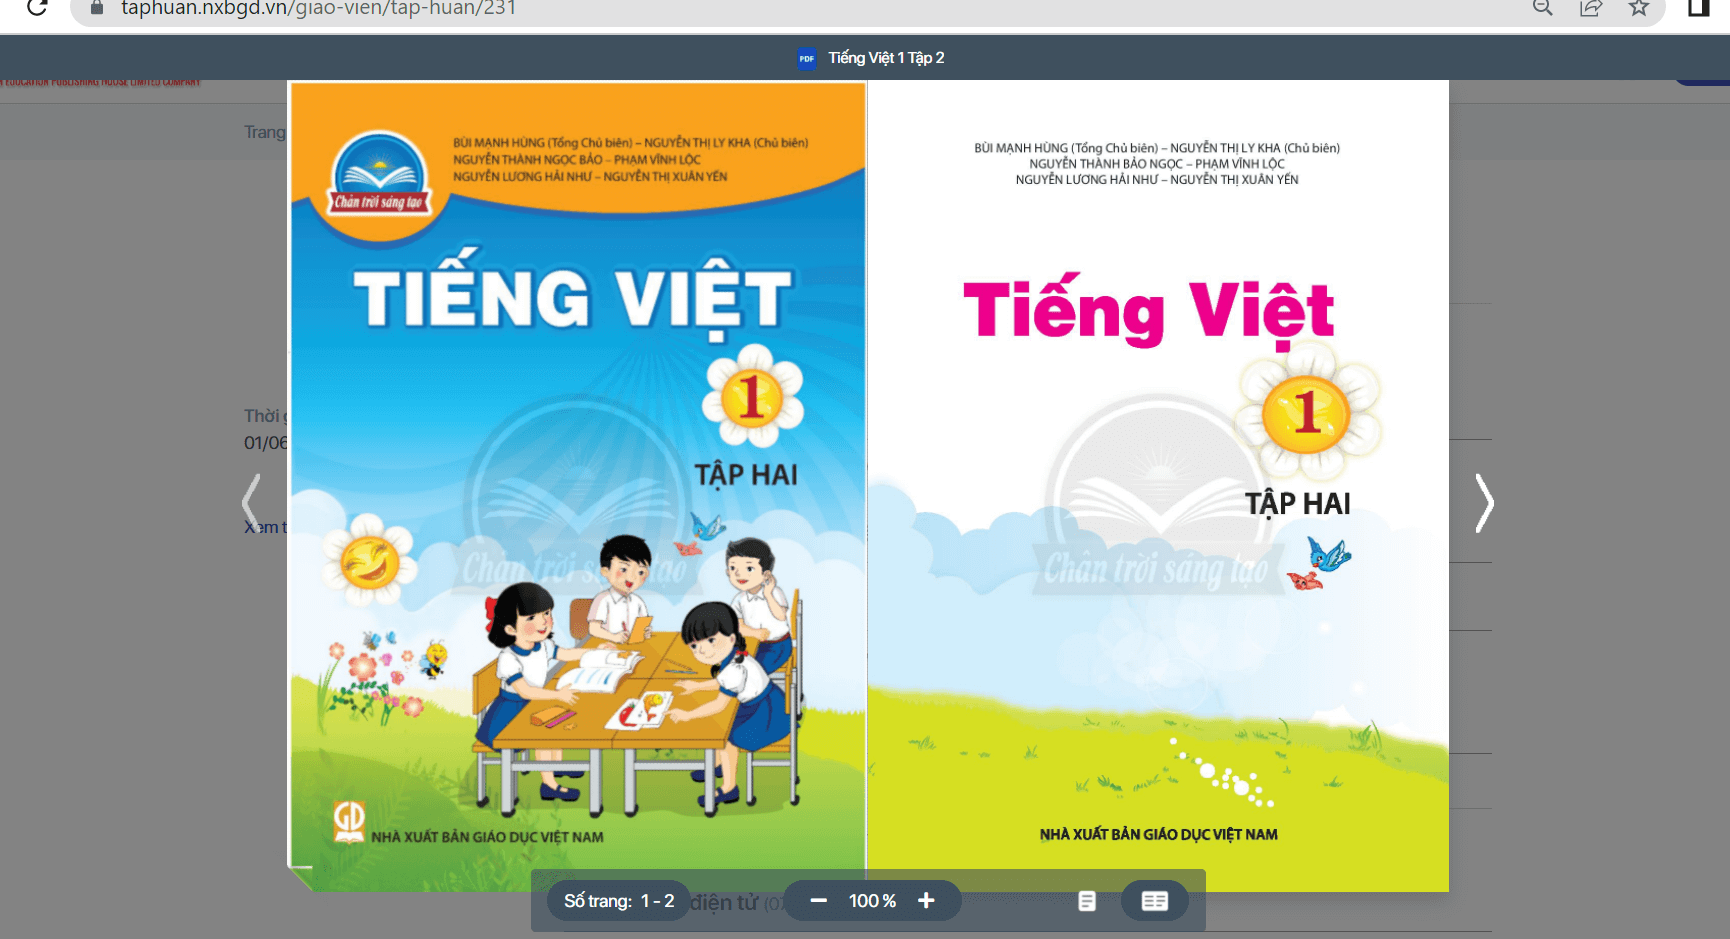 Sách Tiếng Việt lớp 1 Chân trời sáng tạo